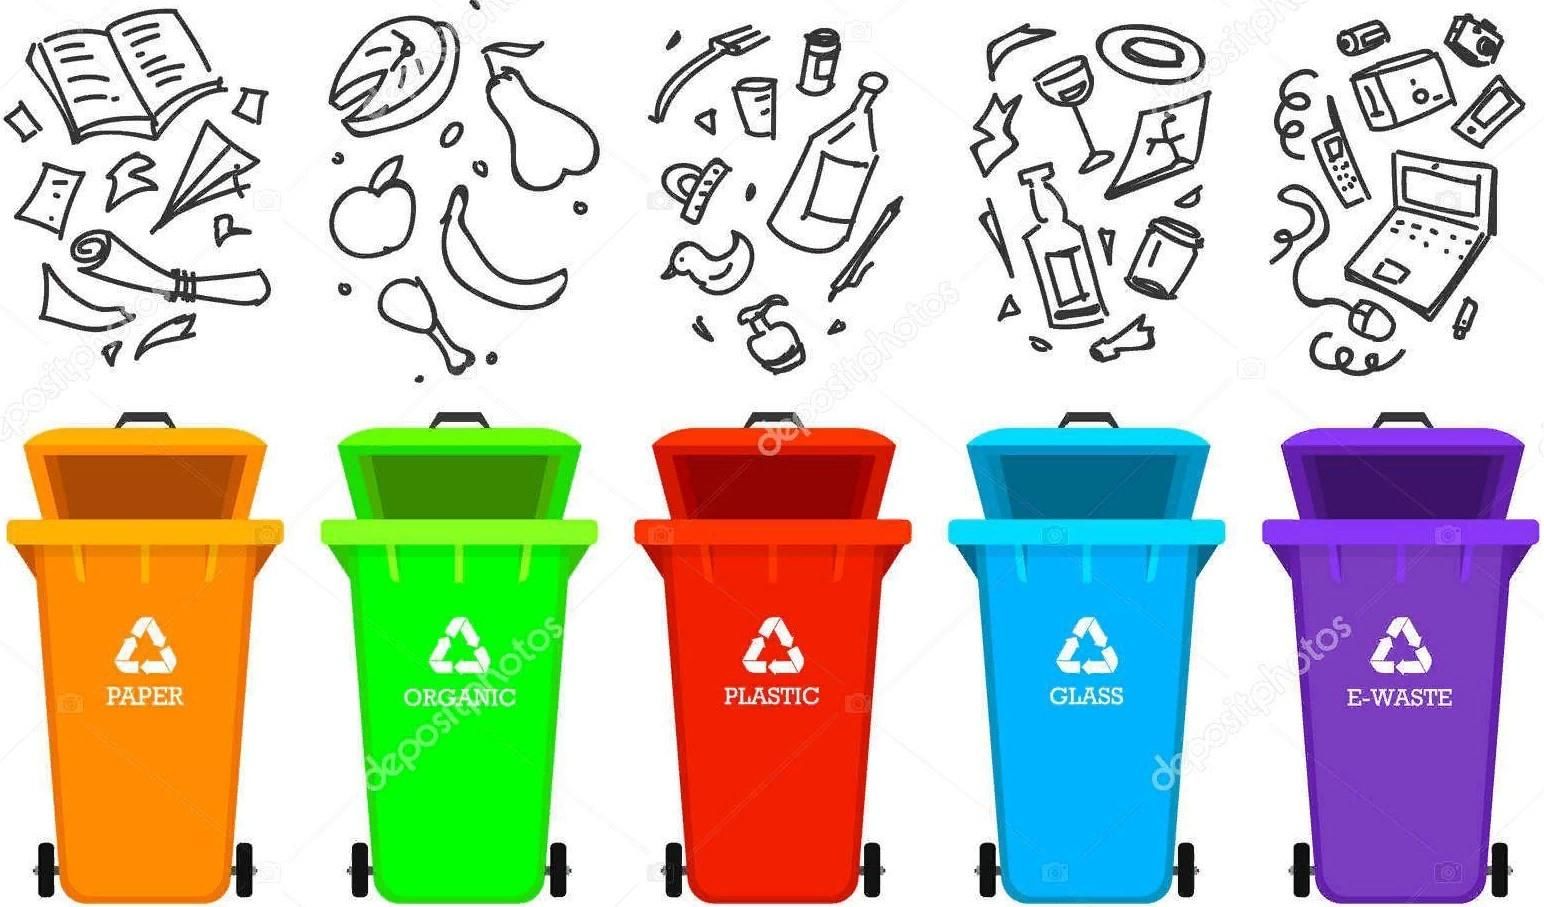 Значки для сортировки мусора для пищевых отходов